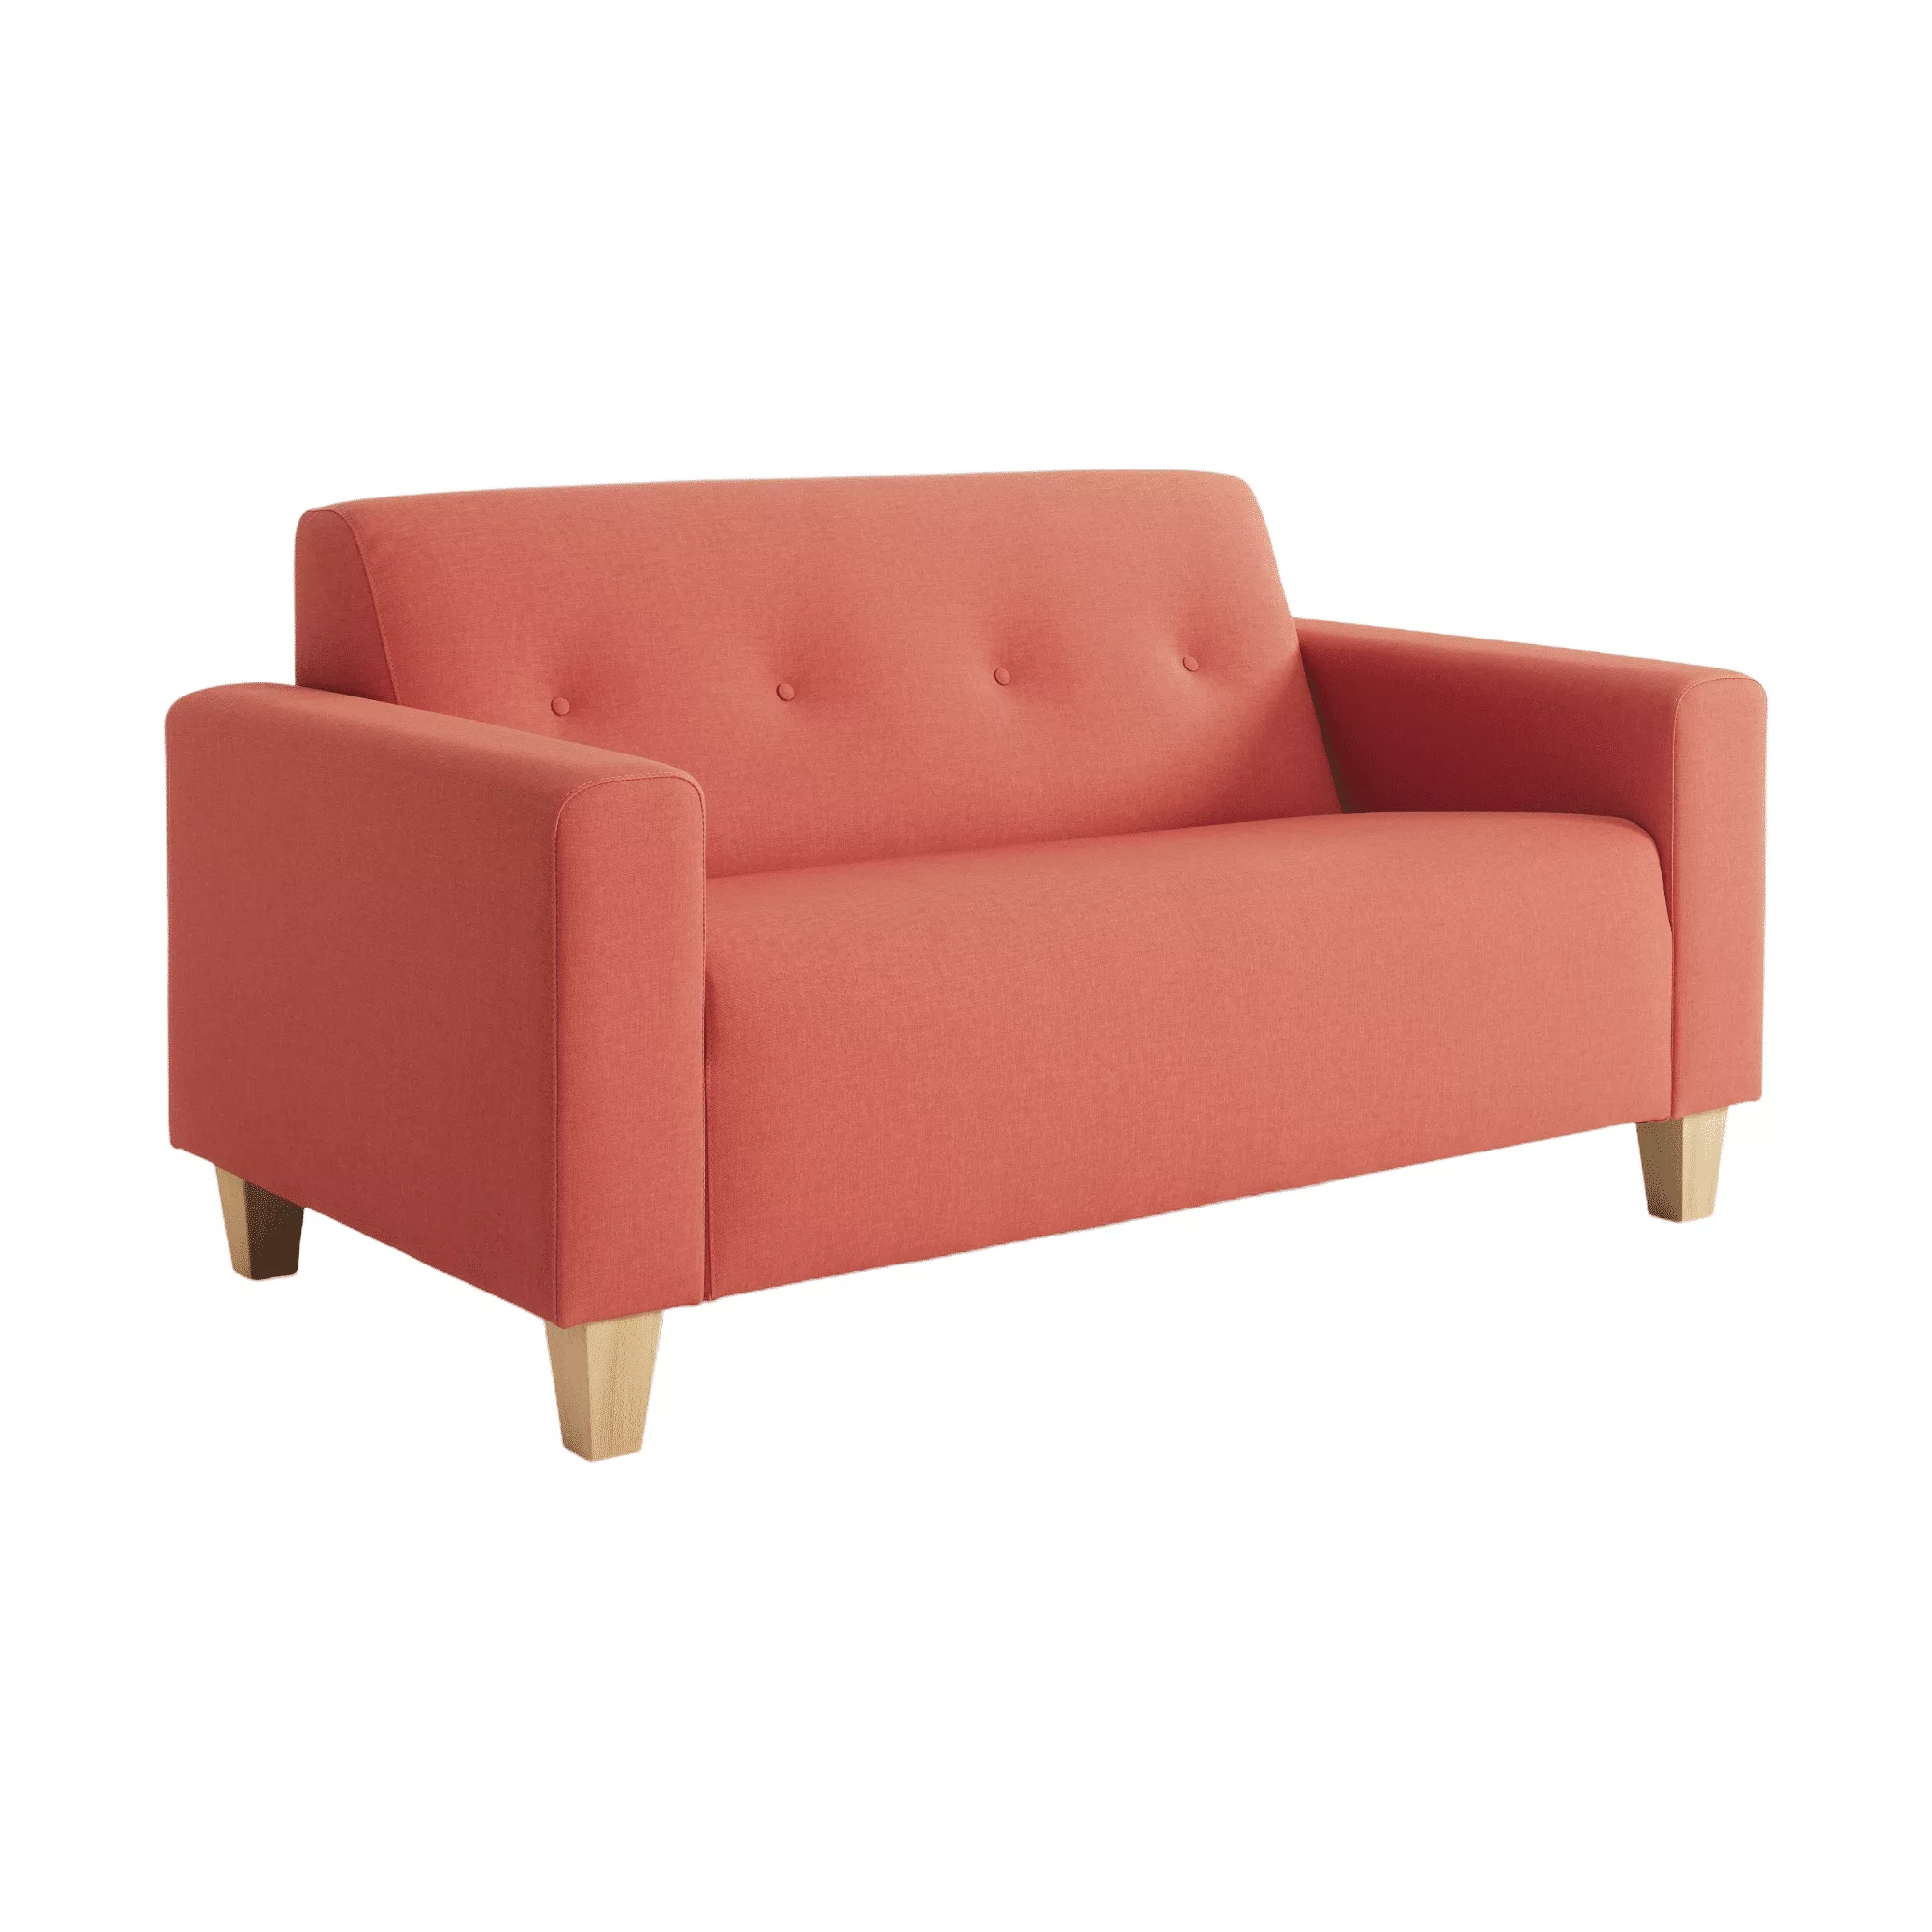 Roze zitbank met sierknopen in de rug en houten meubelpoten.